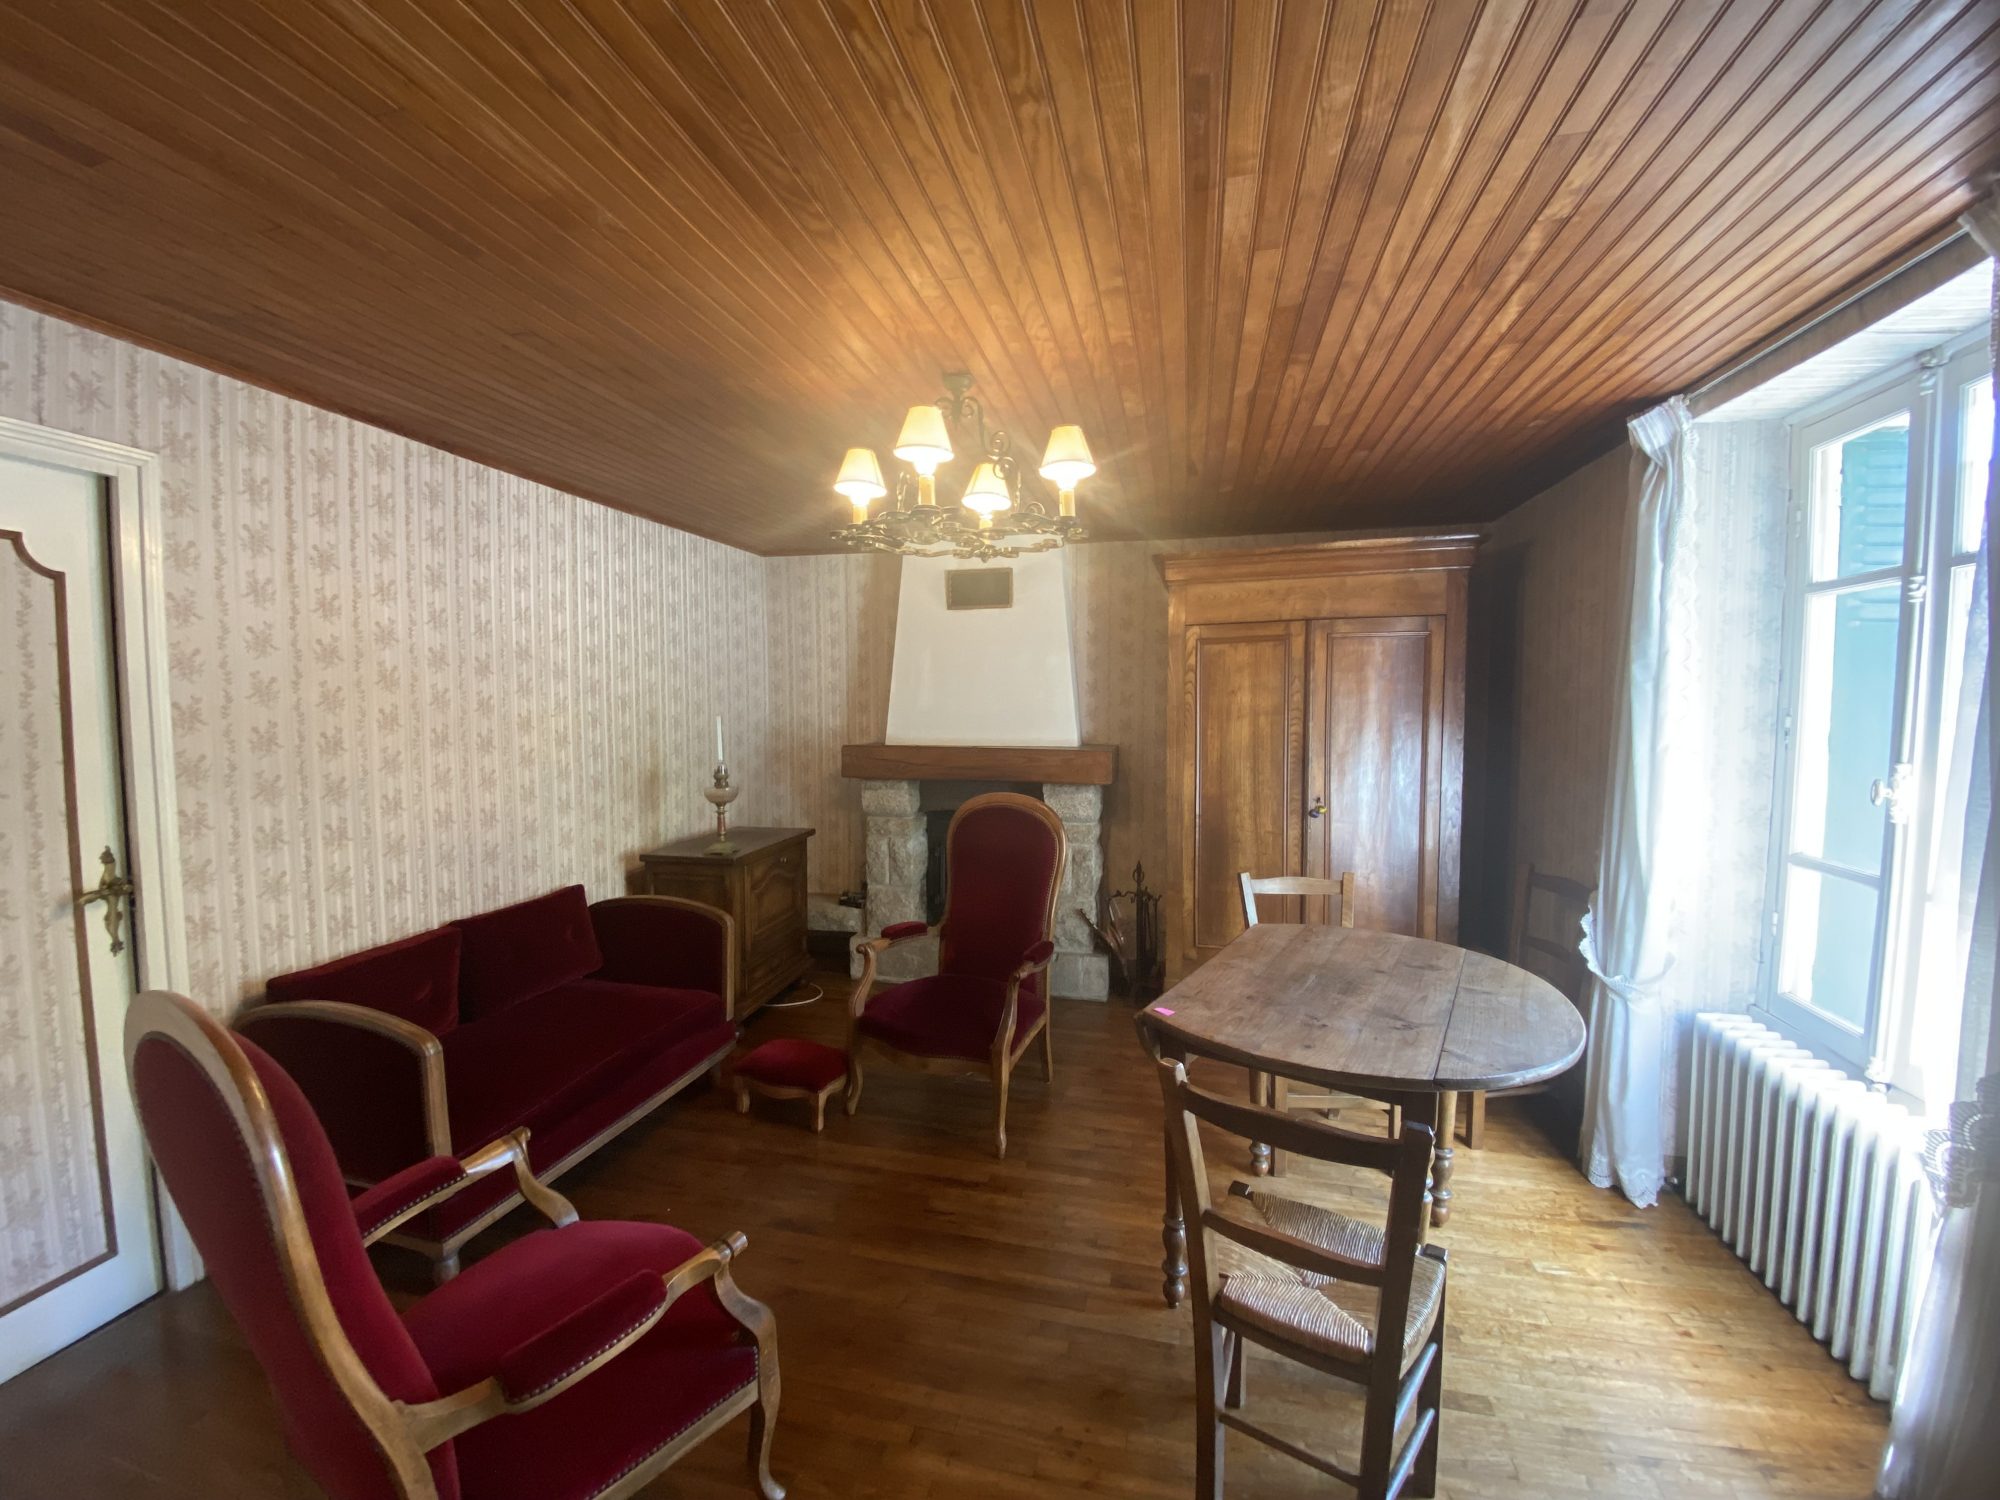 Bien: Maison des années 50 à vendre, à rénover, sur un superbe terrain de plus de 3900 m², à Auray